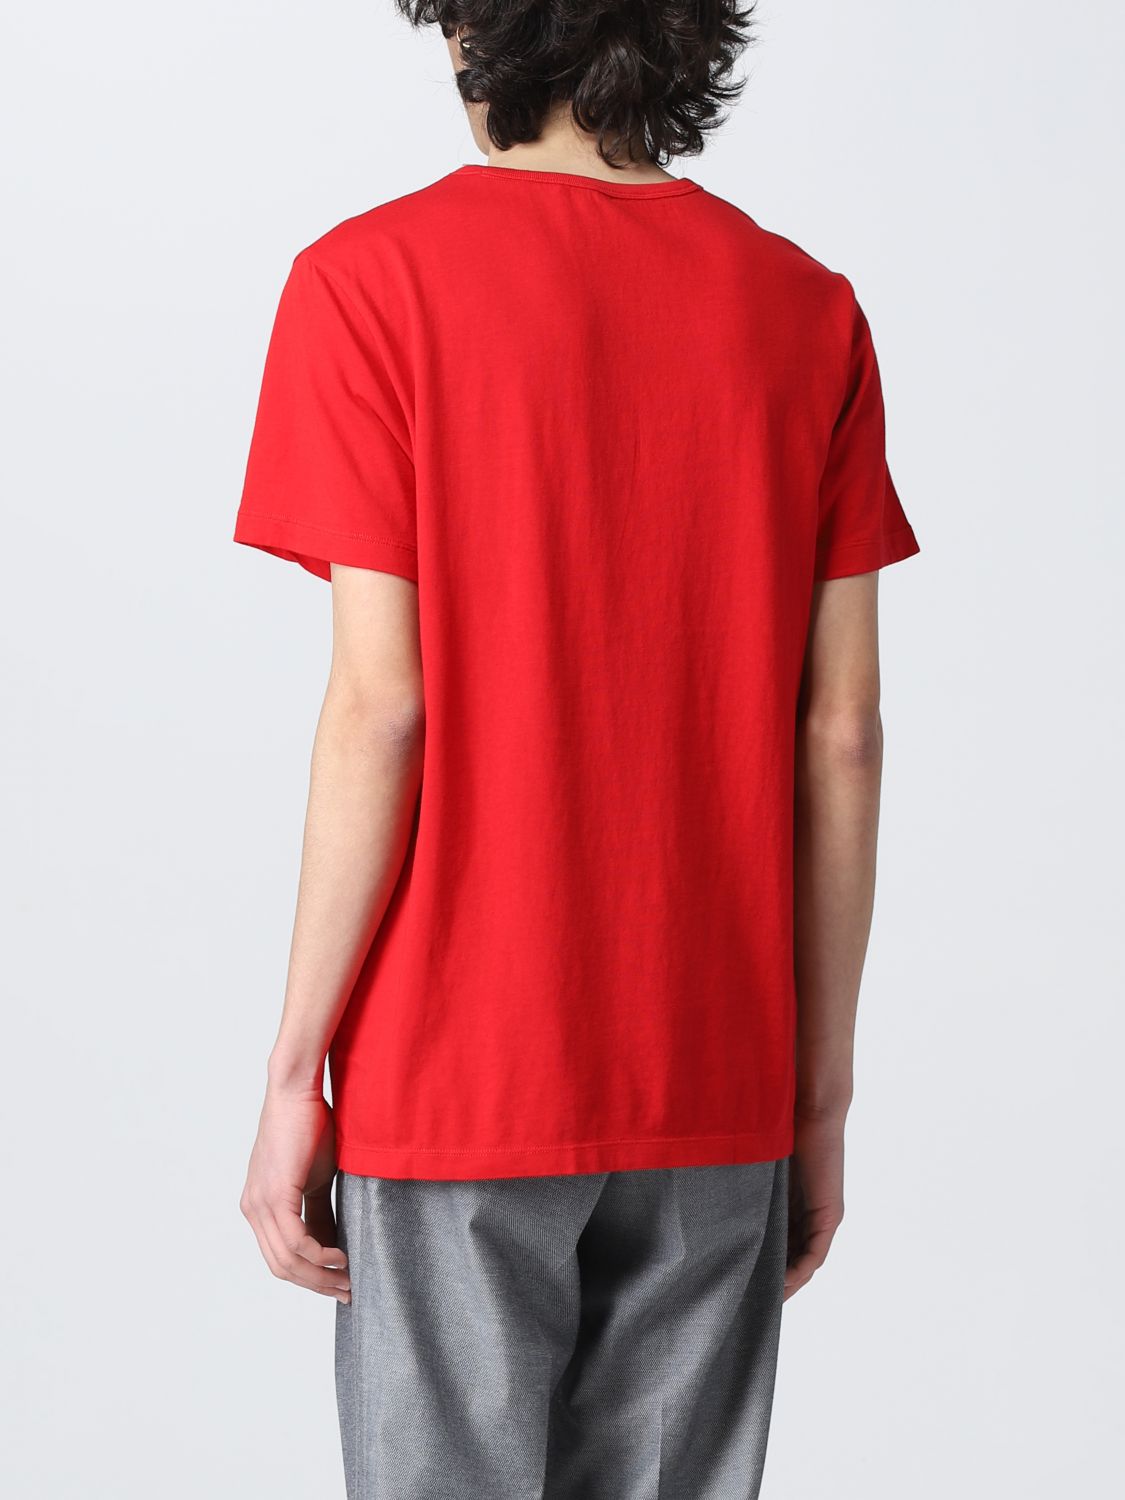 T-shirt Sun 68: Sun 68 t-shirt for men red 2